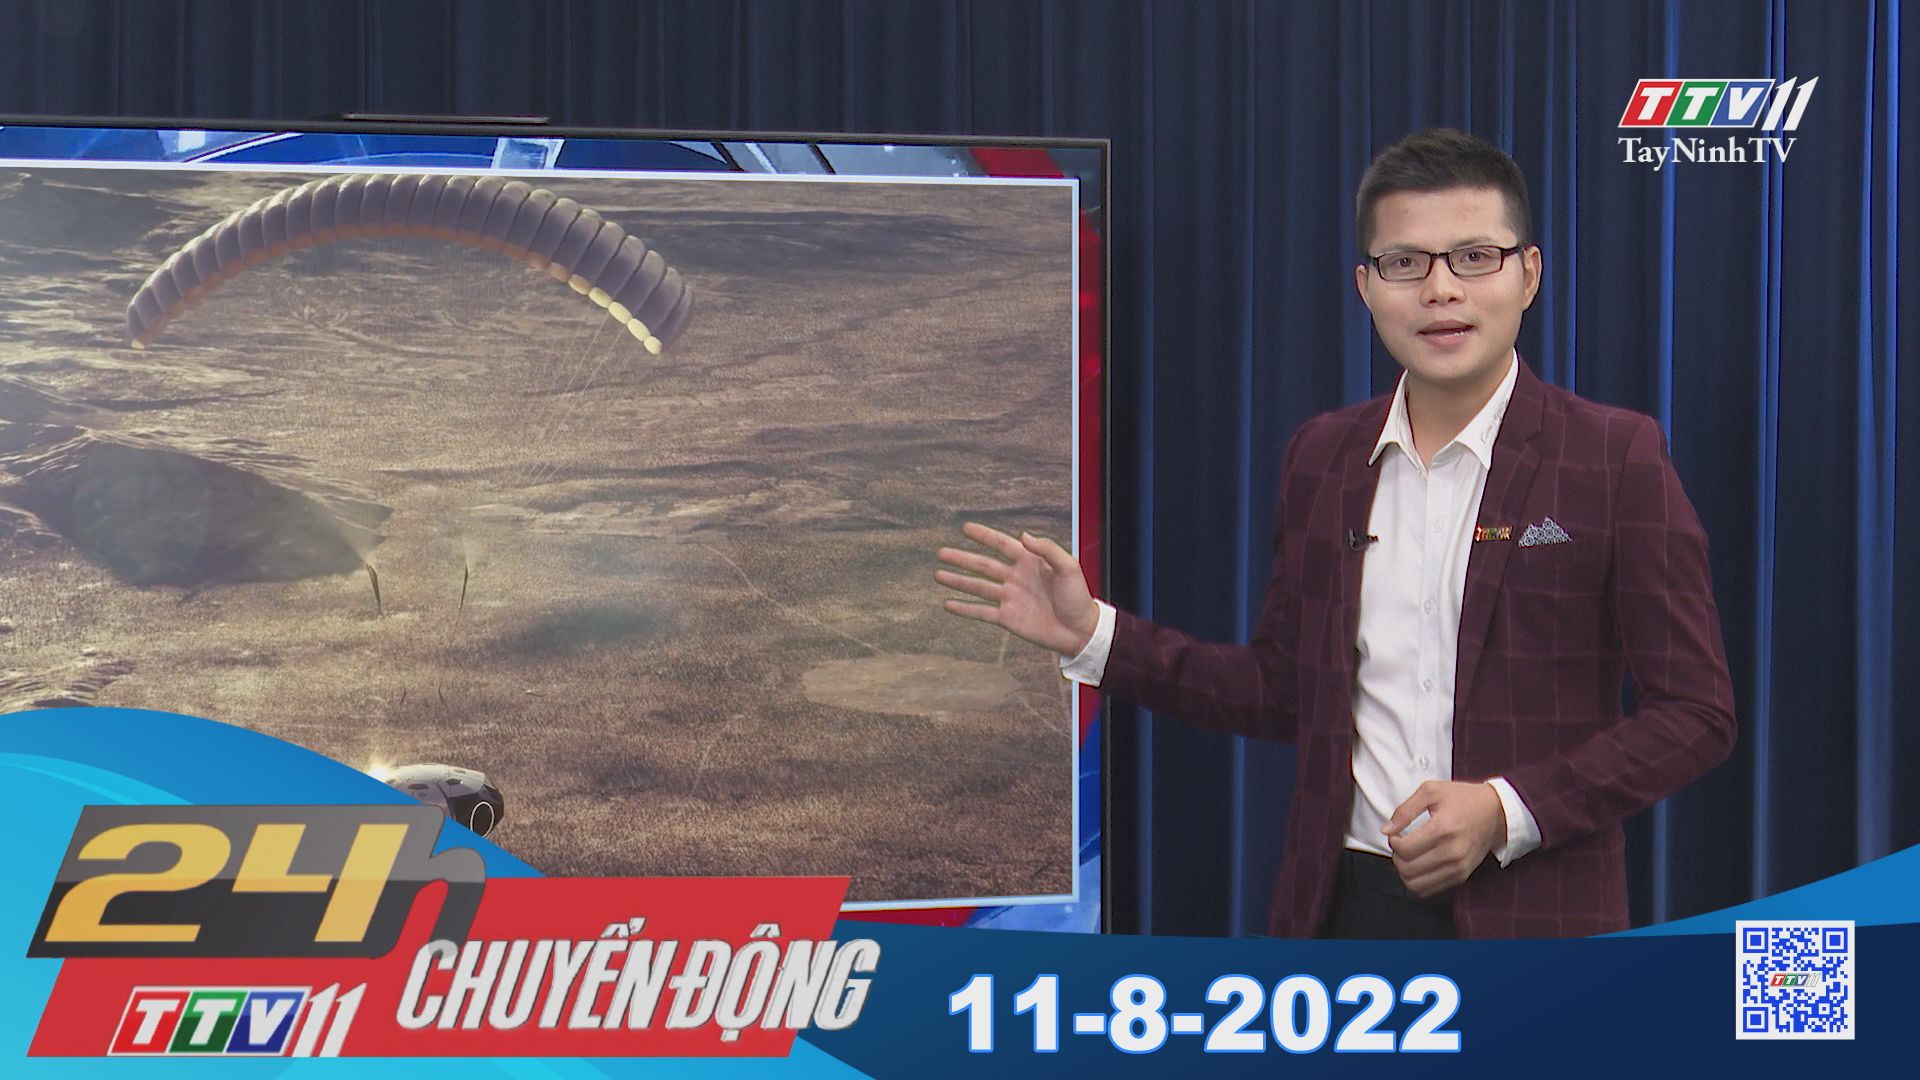 24h Chuyển động 11-8-2022 | Tin tức hôm nay | TayNinhTV